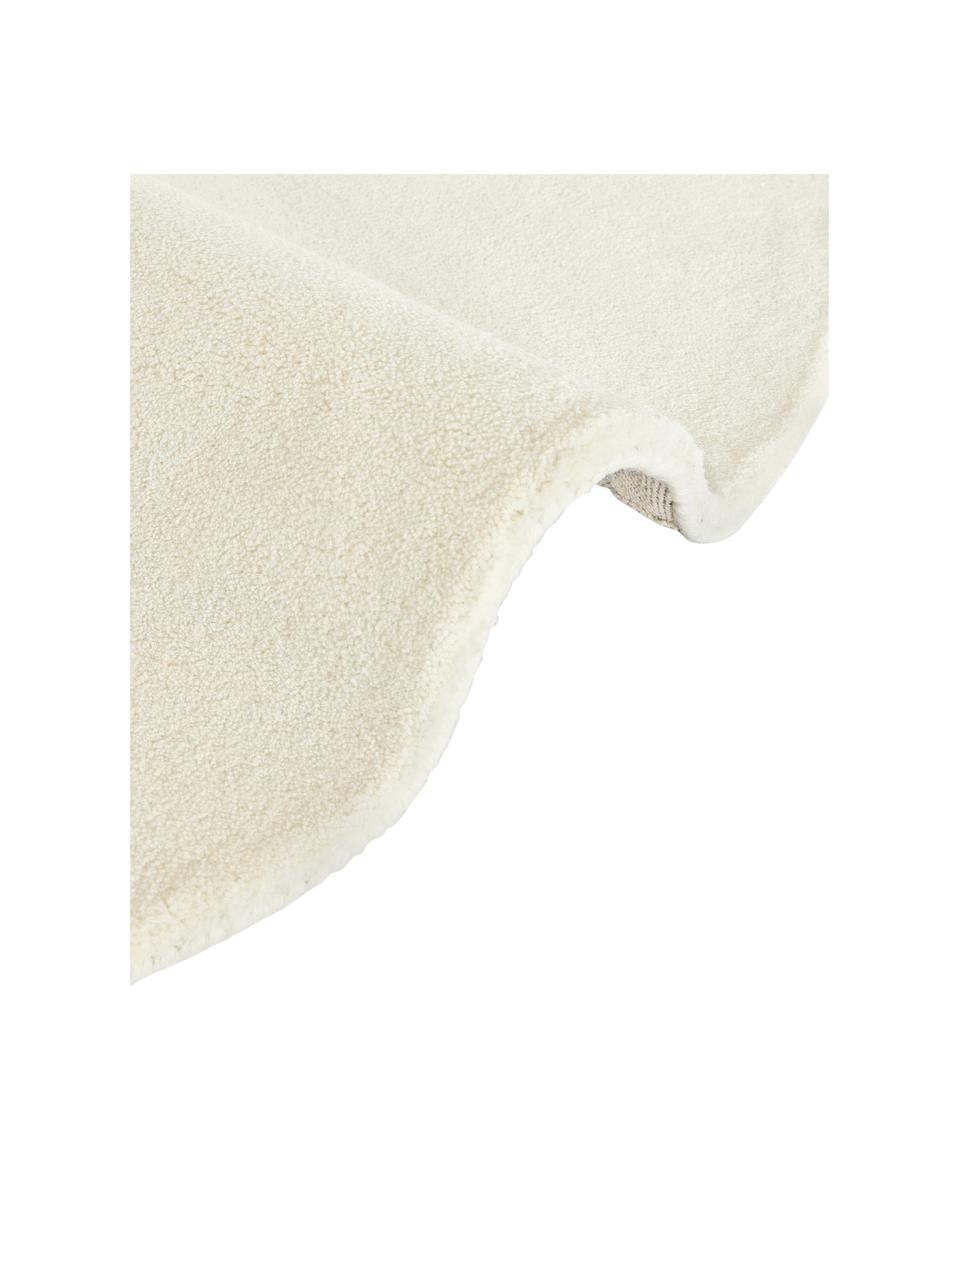 Tapis rond poils ras en laine tufté main Jadie, Blanc crème, Ø 150 cm (taille M)